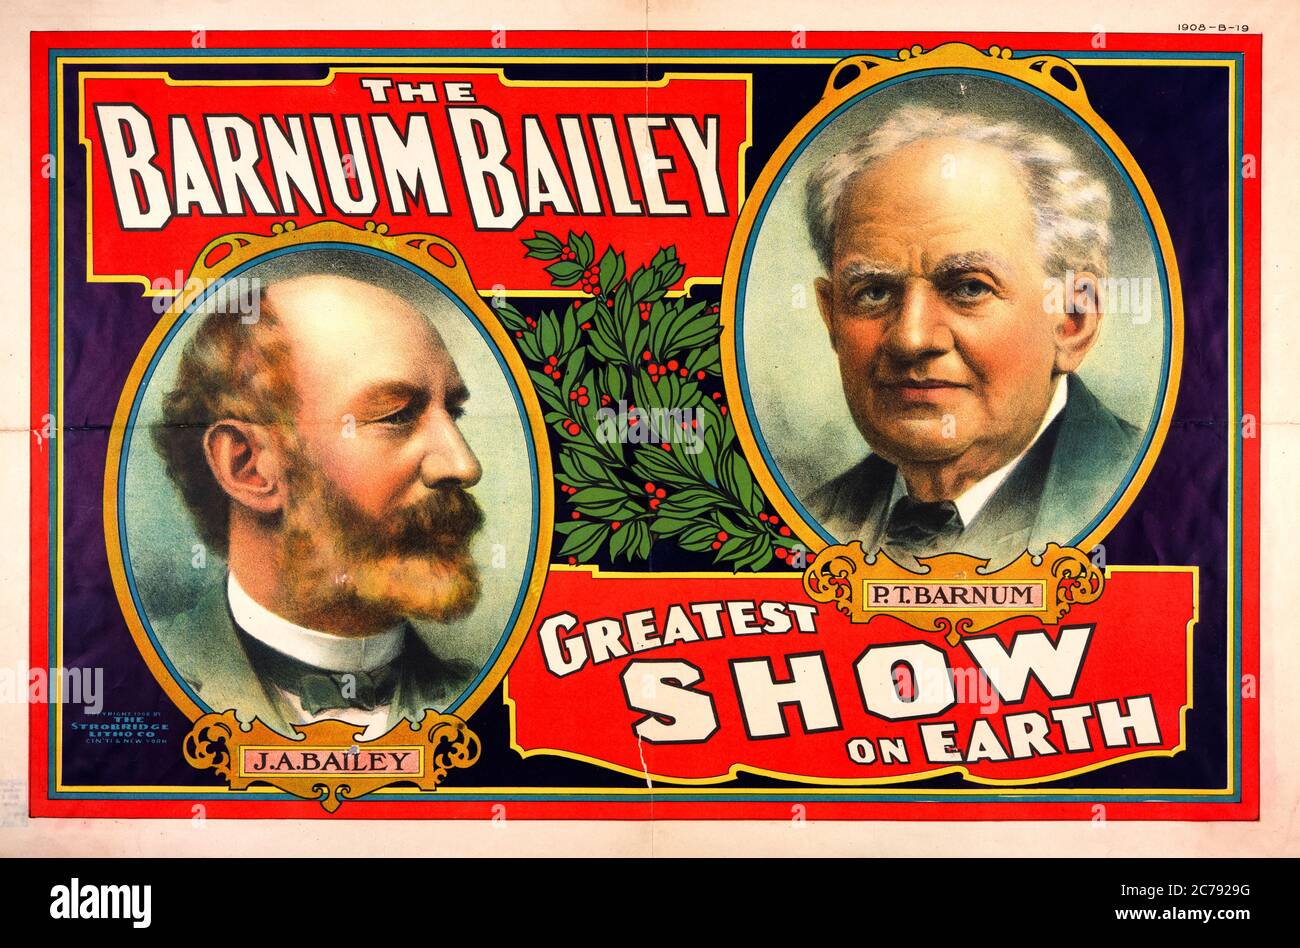 El, Barnum Bailey, el mayor espectáculo de la tierra, póster de circo con retrato, 1908 Foto de stock